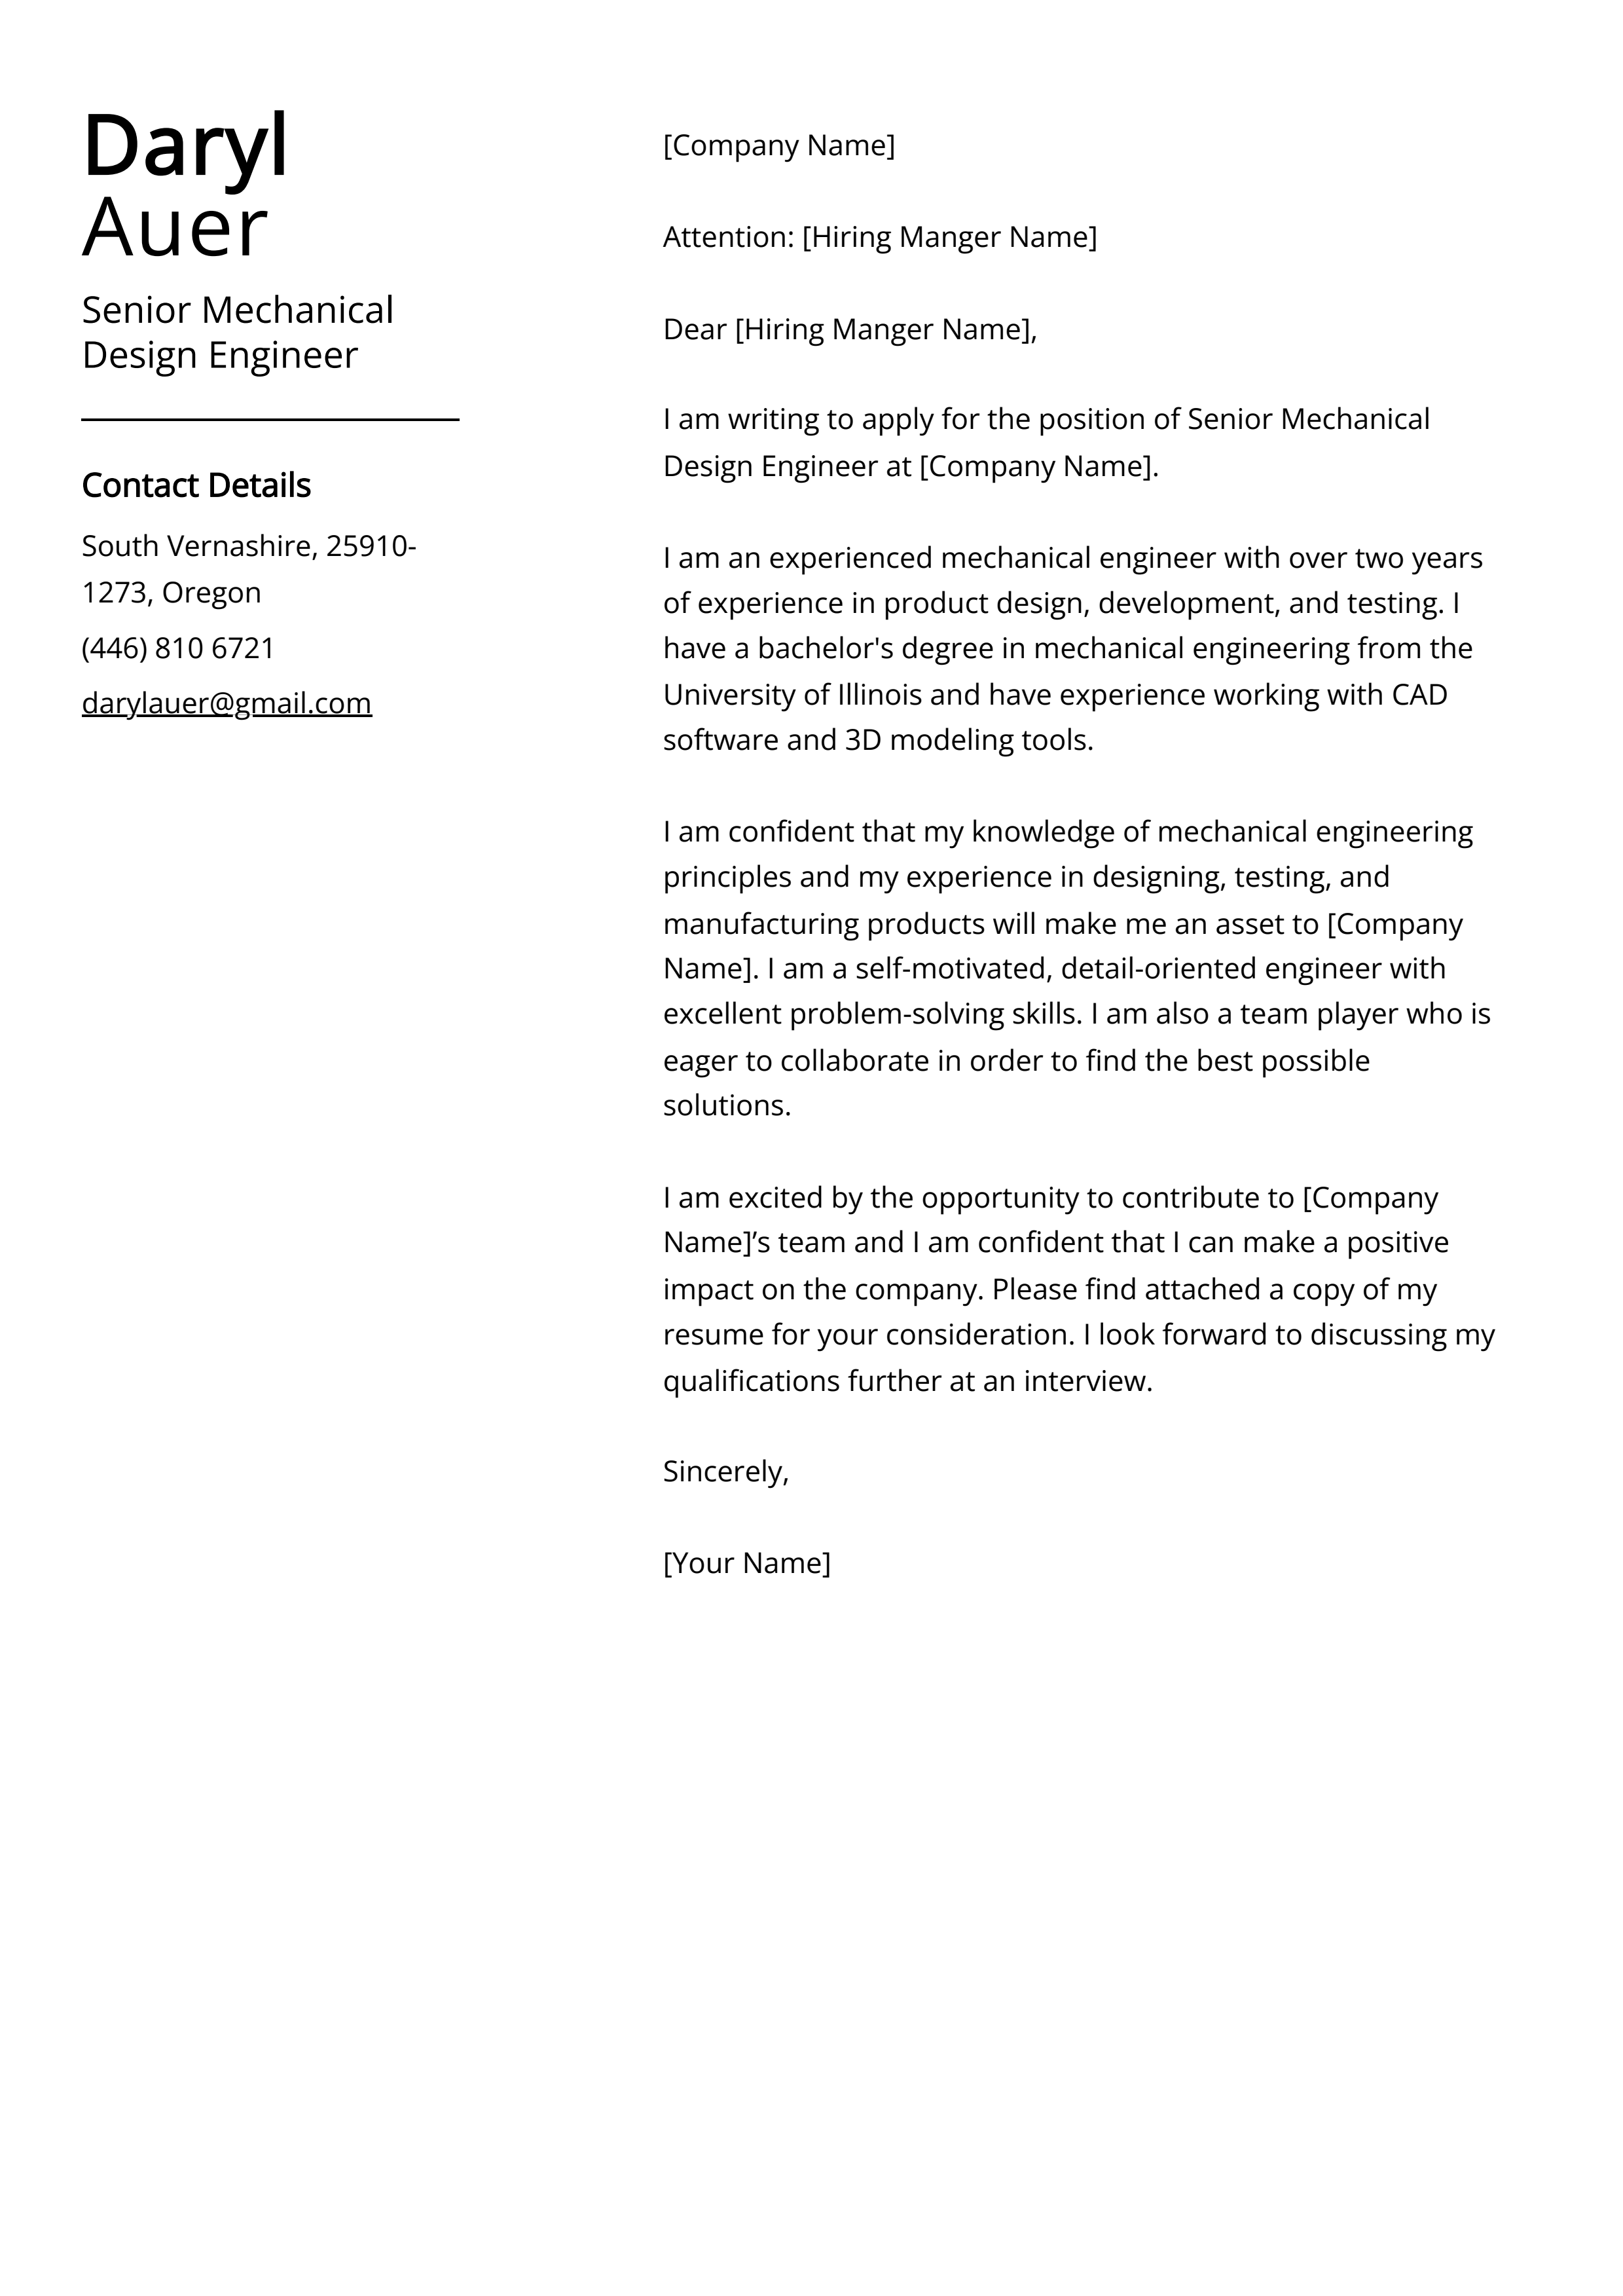 Senior Mechanical Design Engineer Cover Letter Example